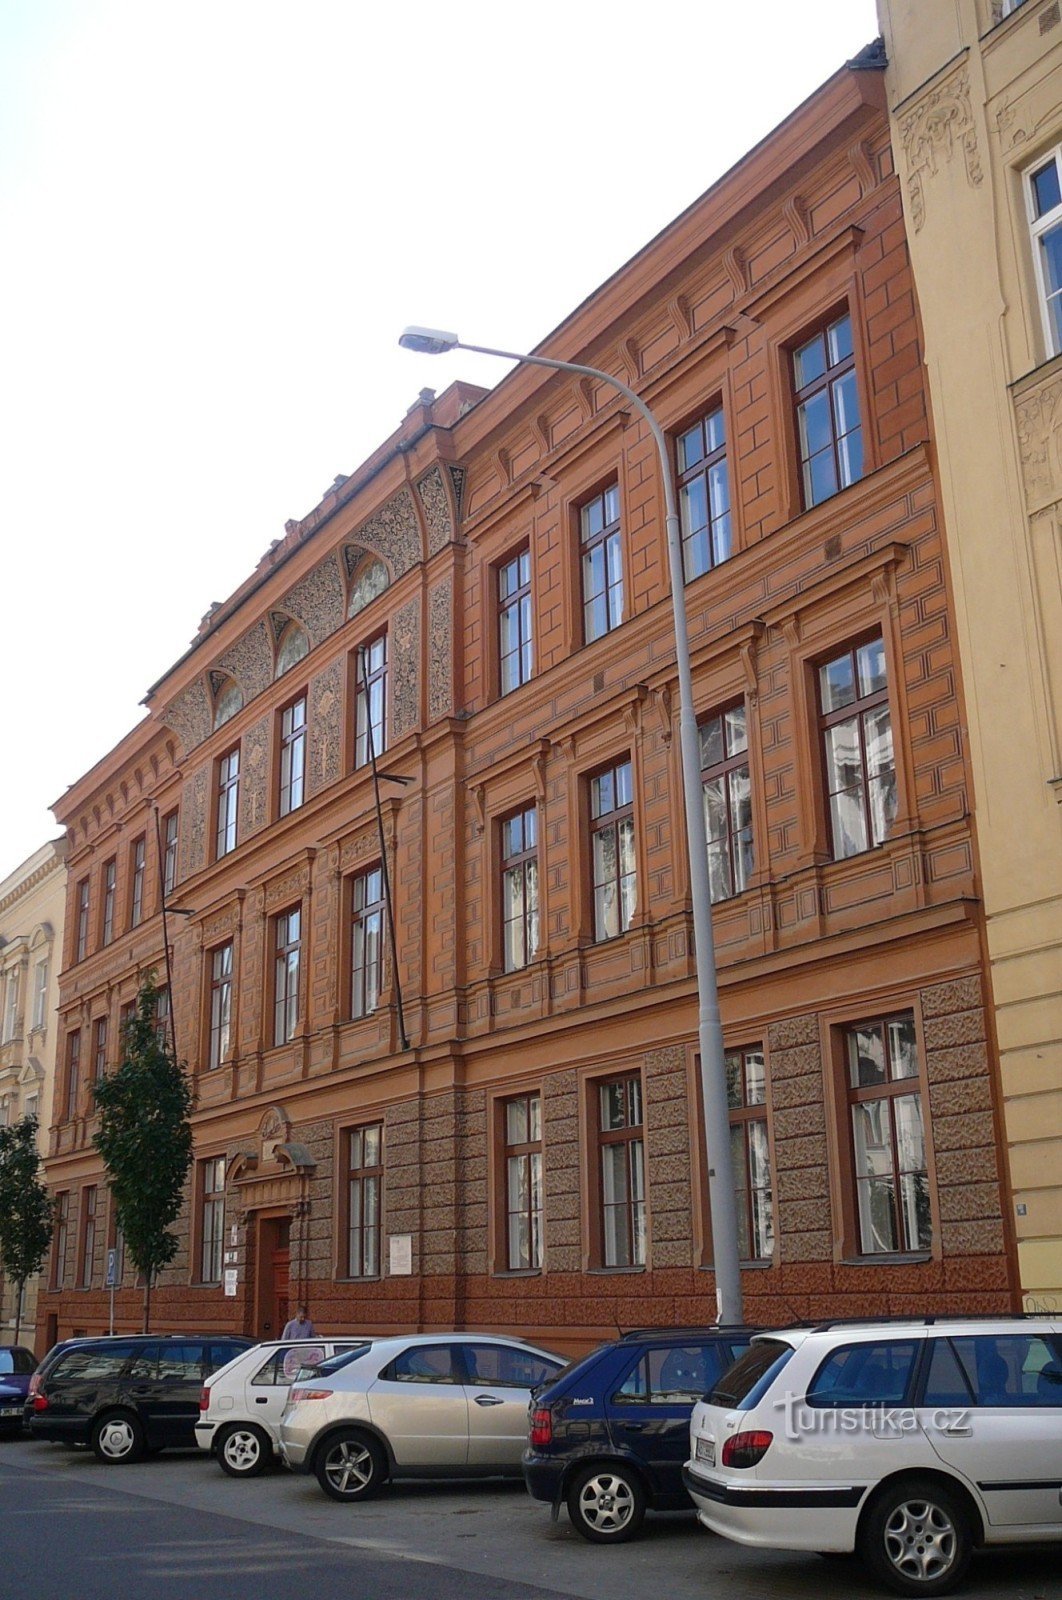 Szkoła przy Jaselská 7 autorstwa architekta Antonína Terbich